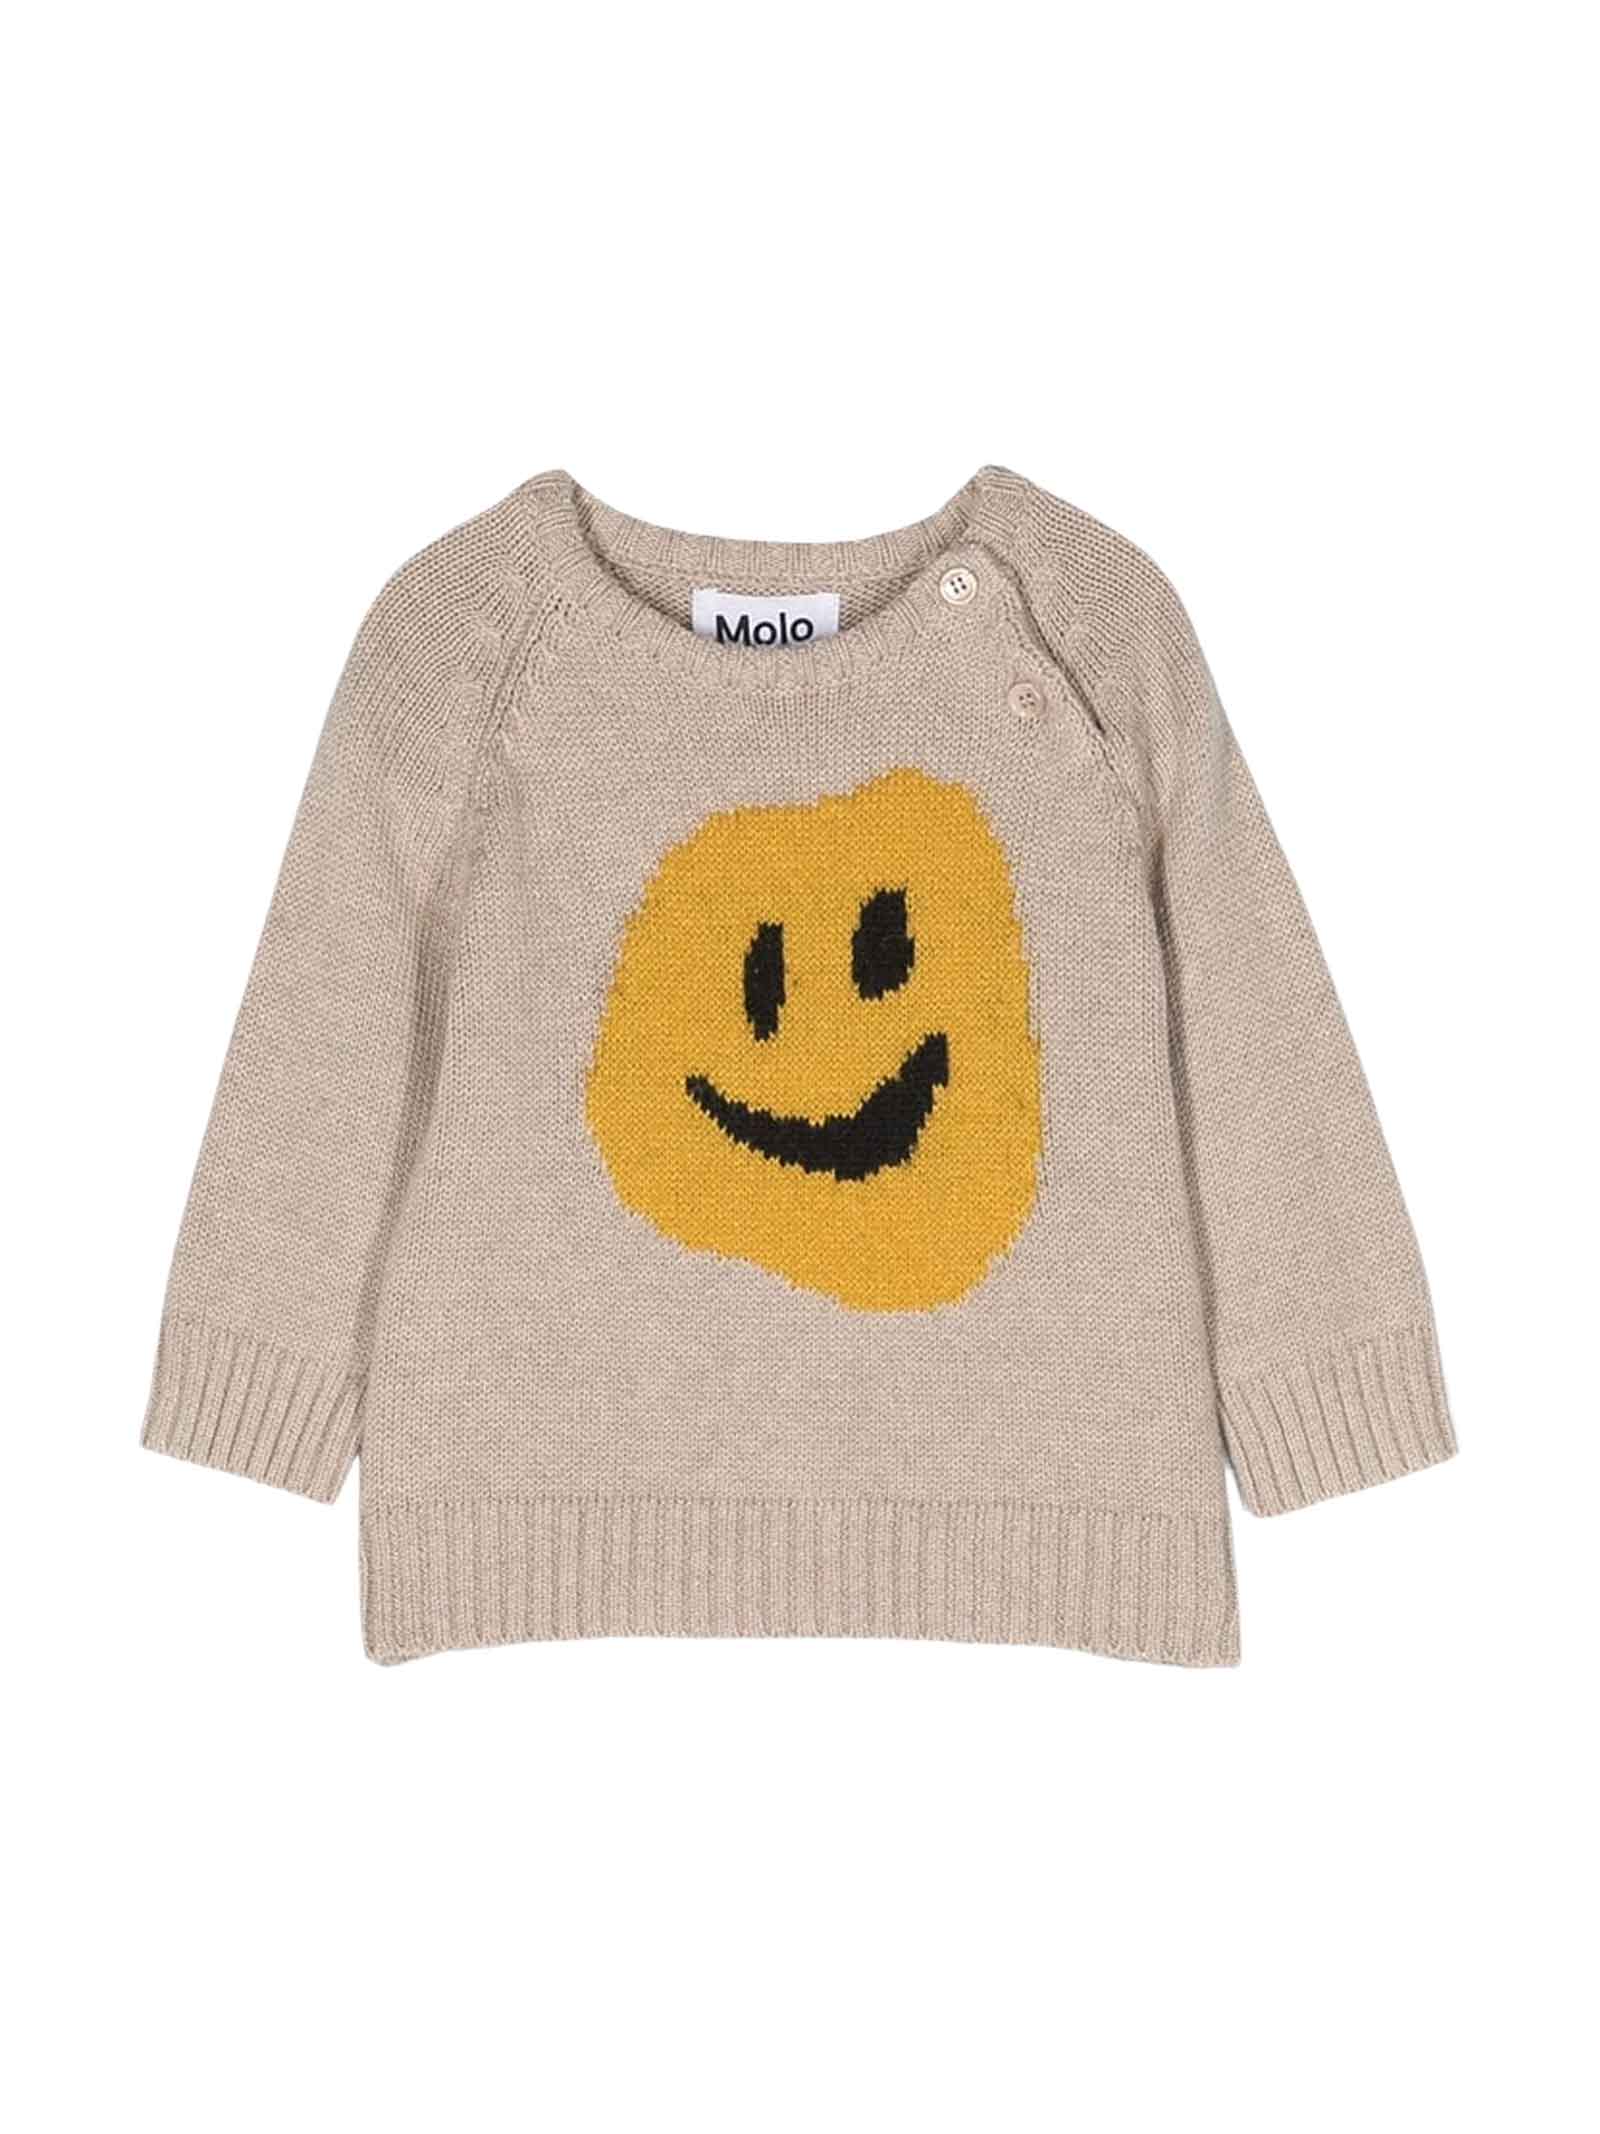 Shop Molo Beige Sweater Unisex Kids